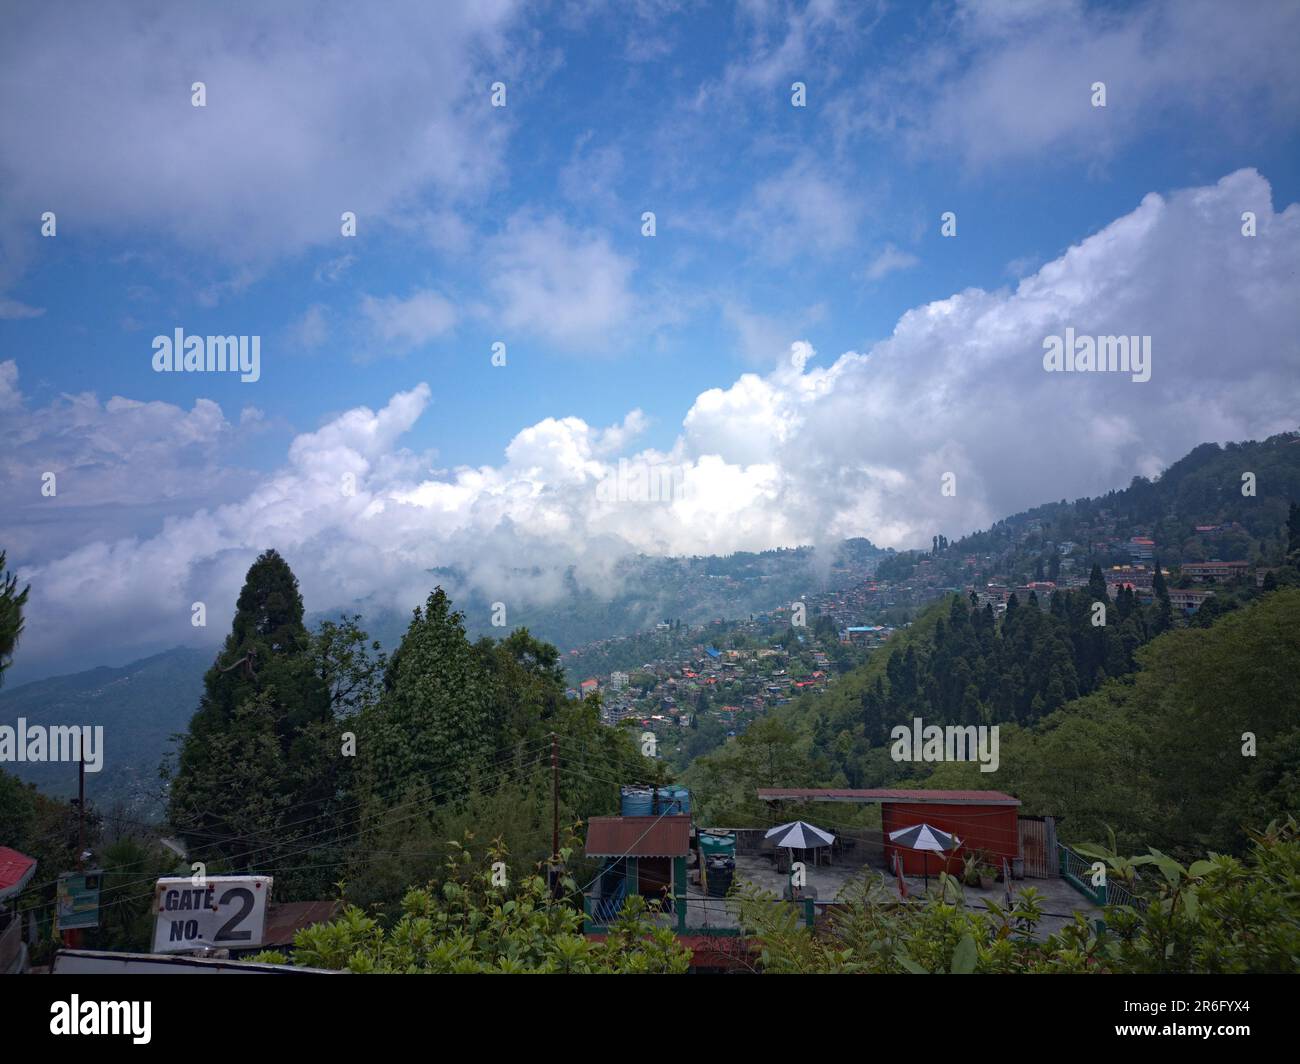 Darjeeling West Bengal India March 25 Stock Photo 1040248252 | Shutterstock